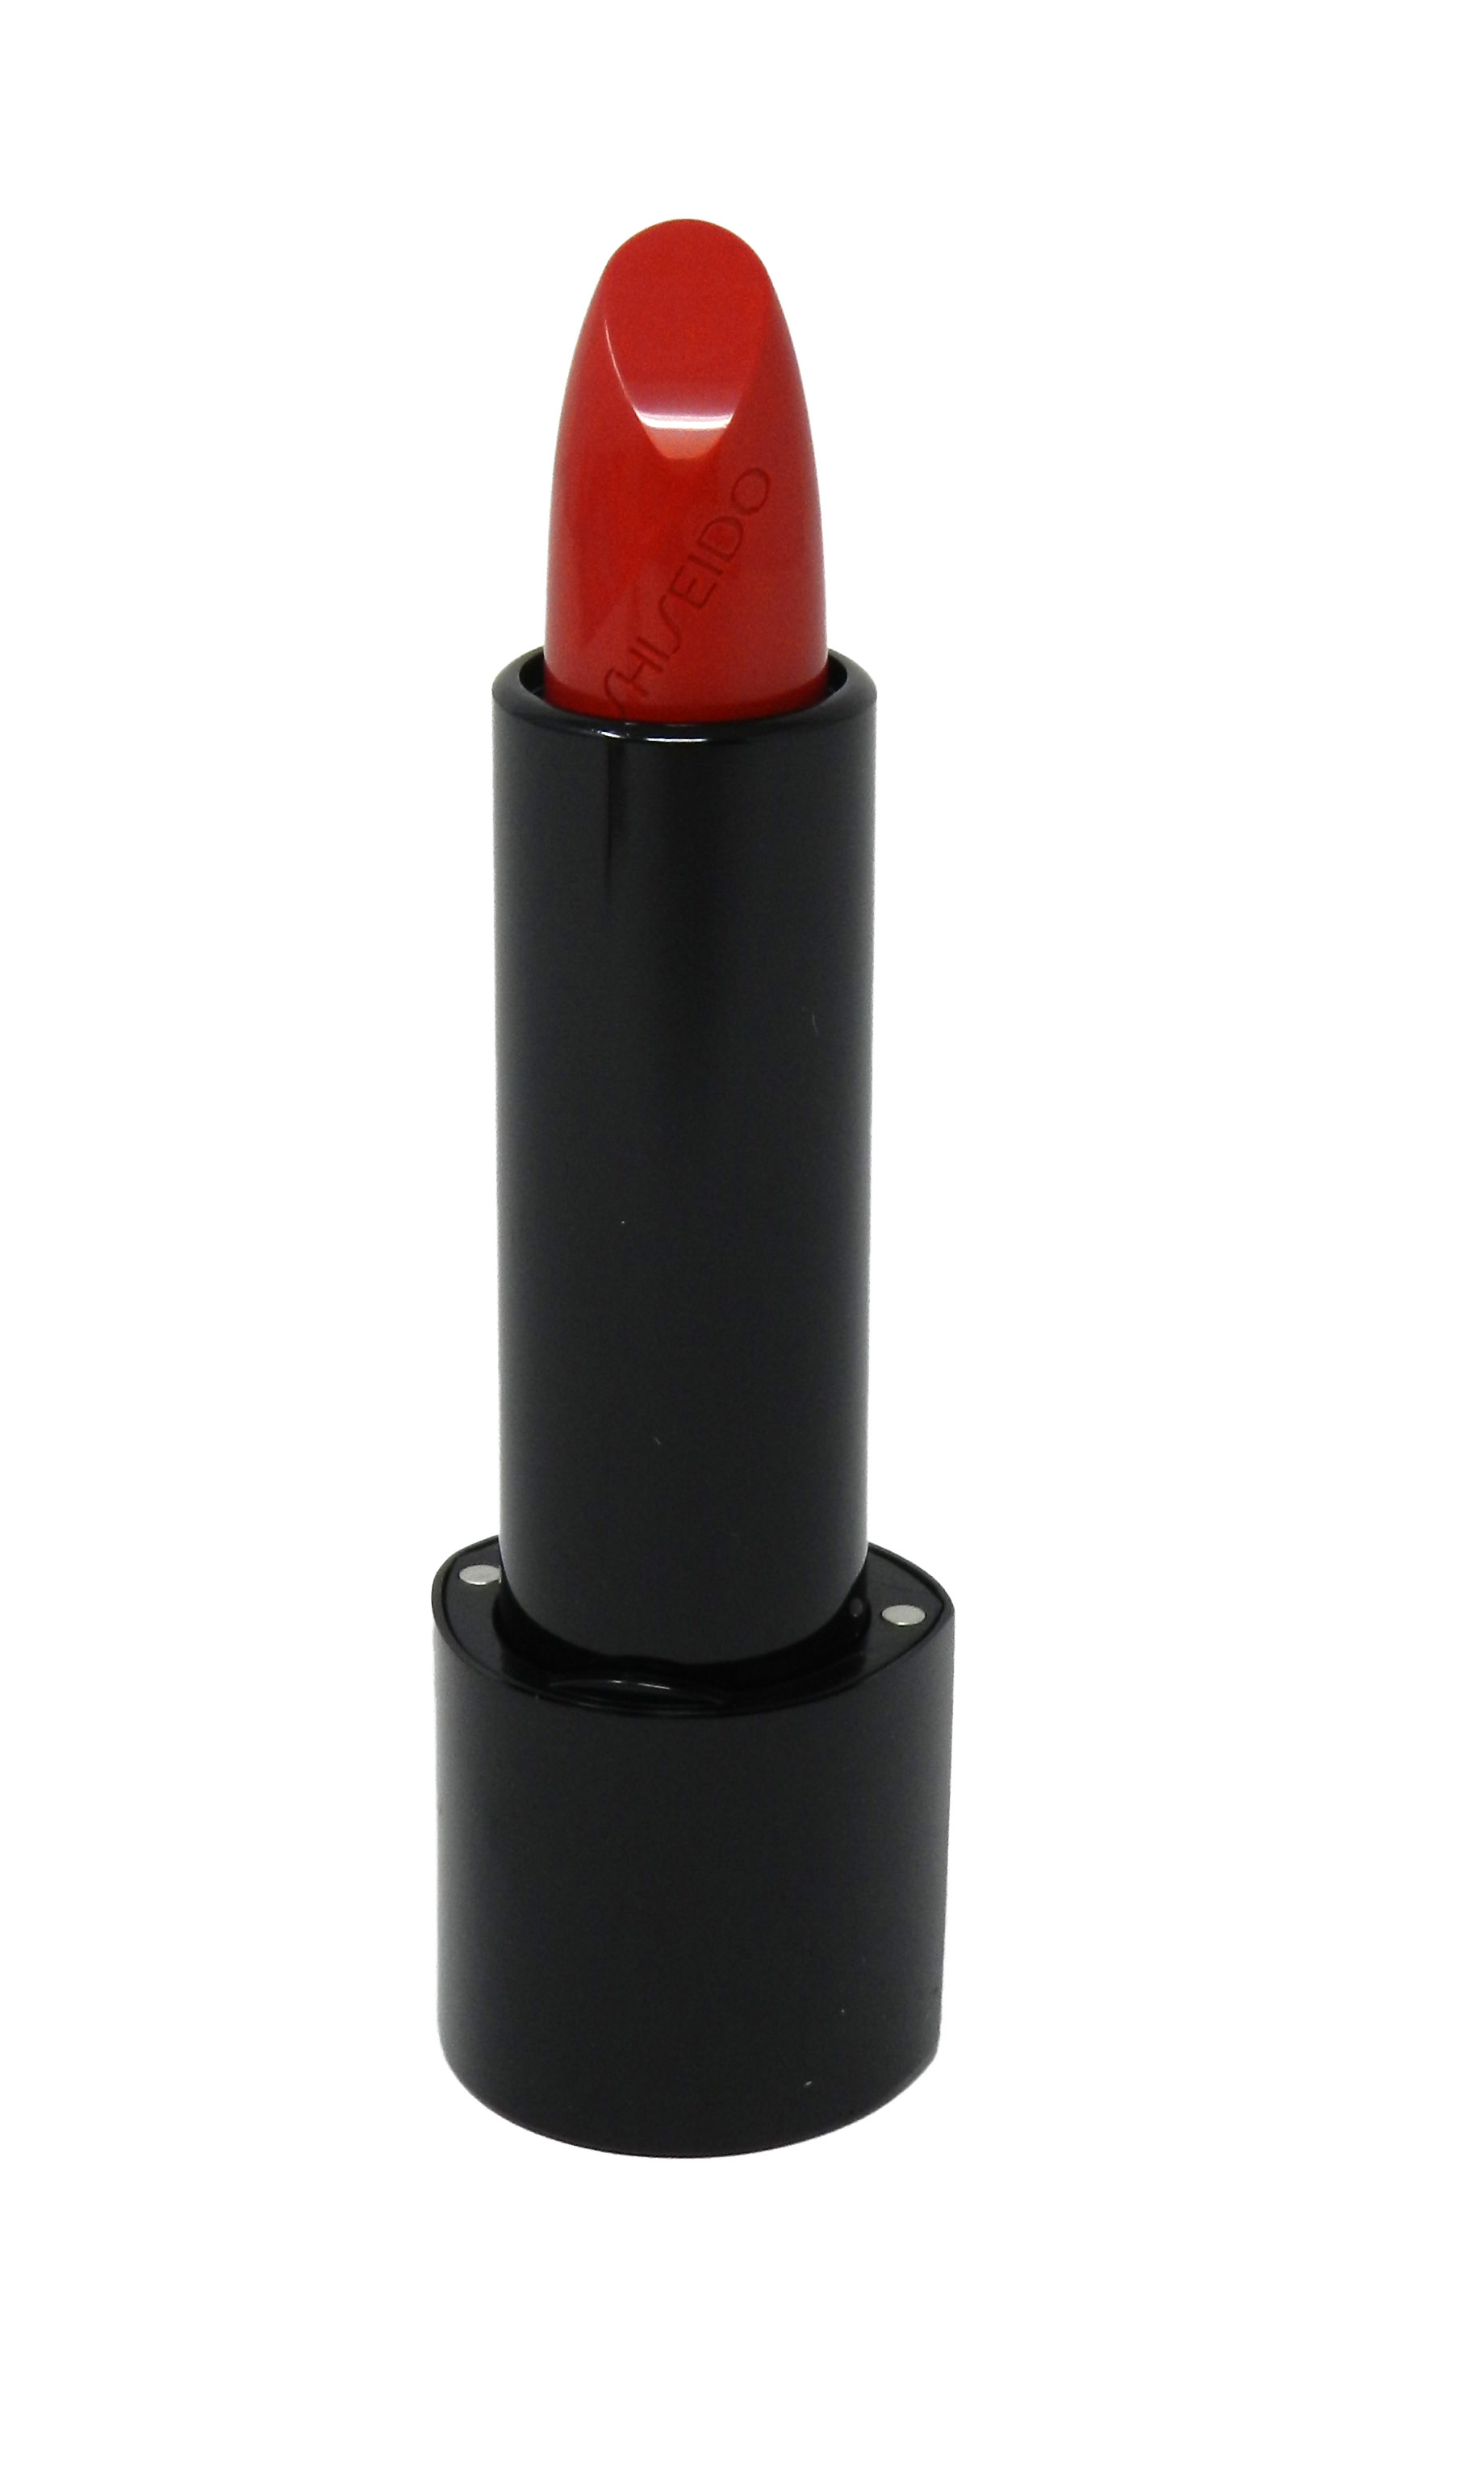 Shiseido Rouge Rouge Lipstick - # RD312 Poppy 0.14 oz Lipstick - image 2 of 3